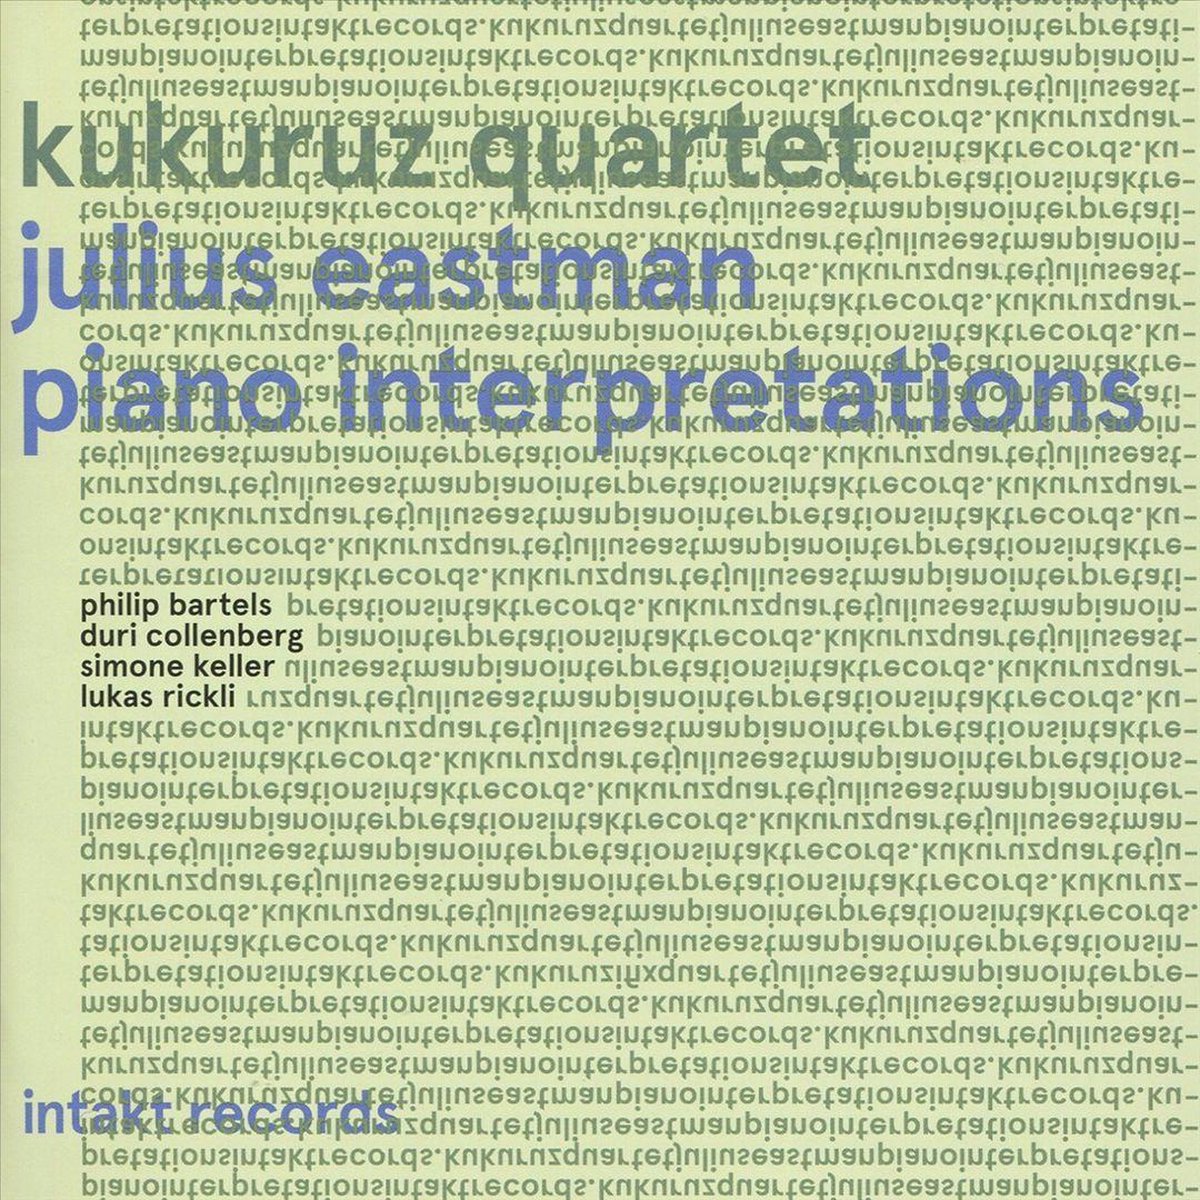 Collenberg/ Bartels/ Keller/ Rickli/ Eastman: Piano Interpretations